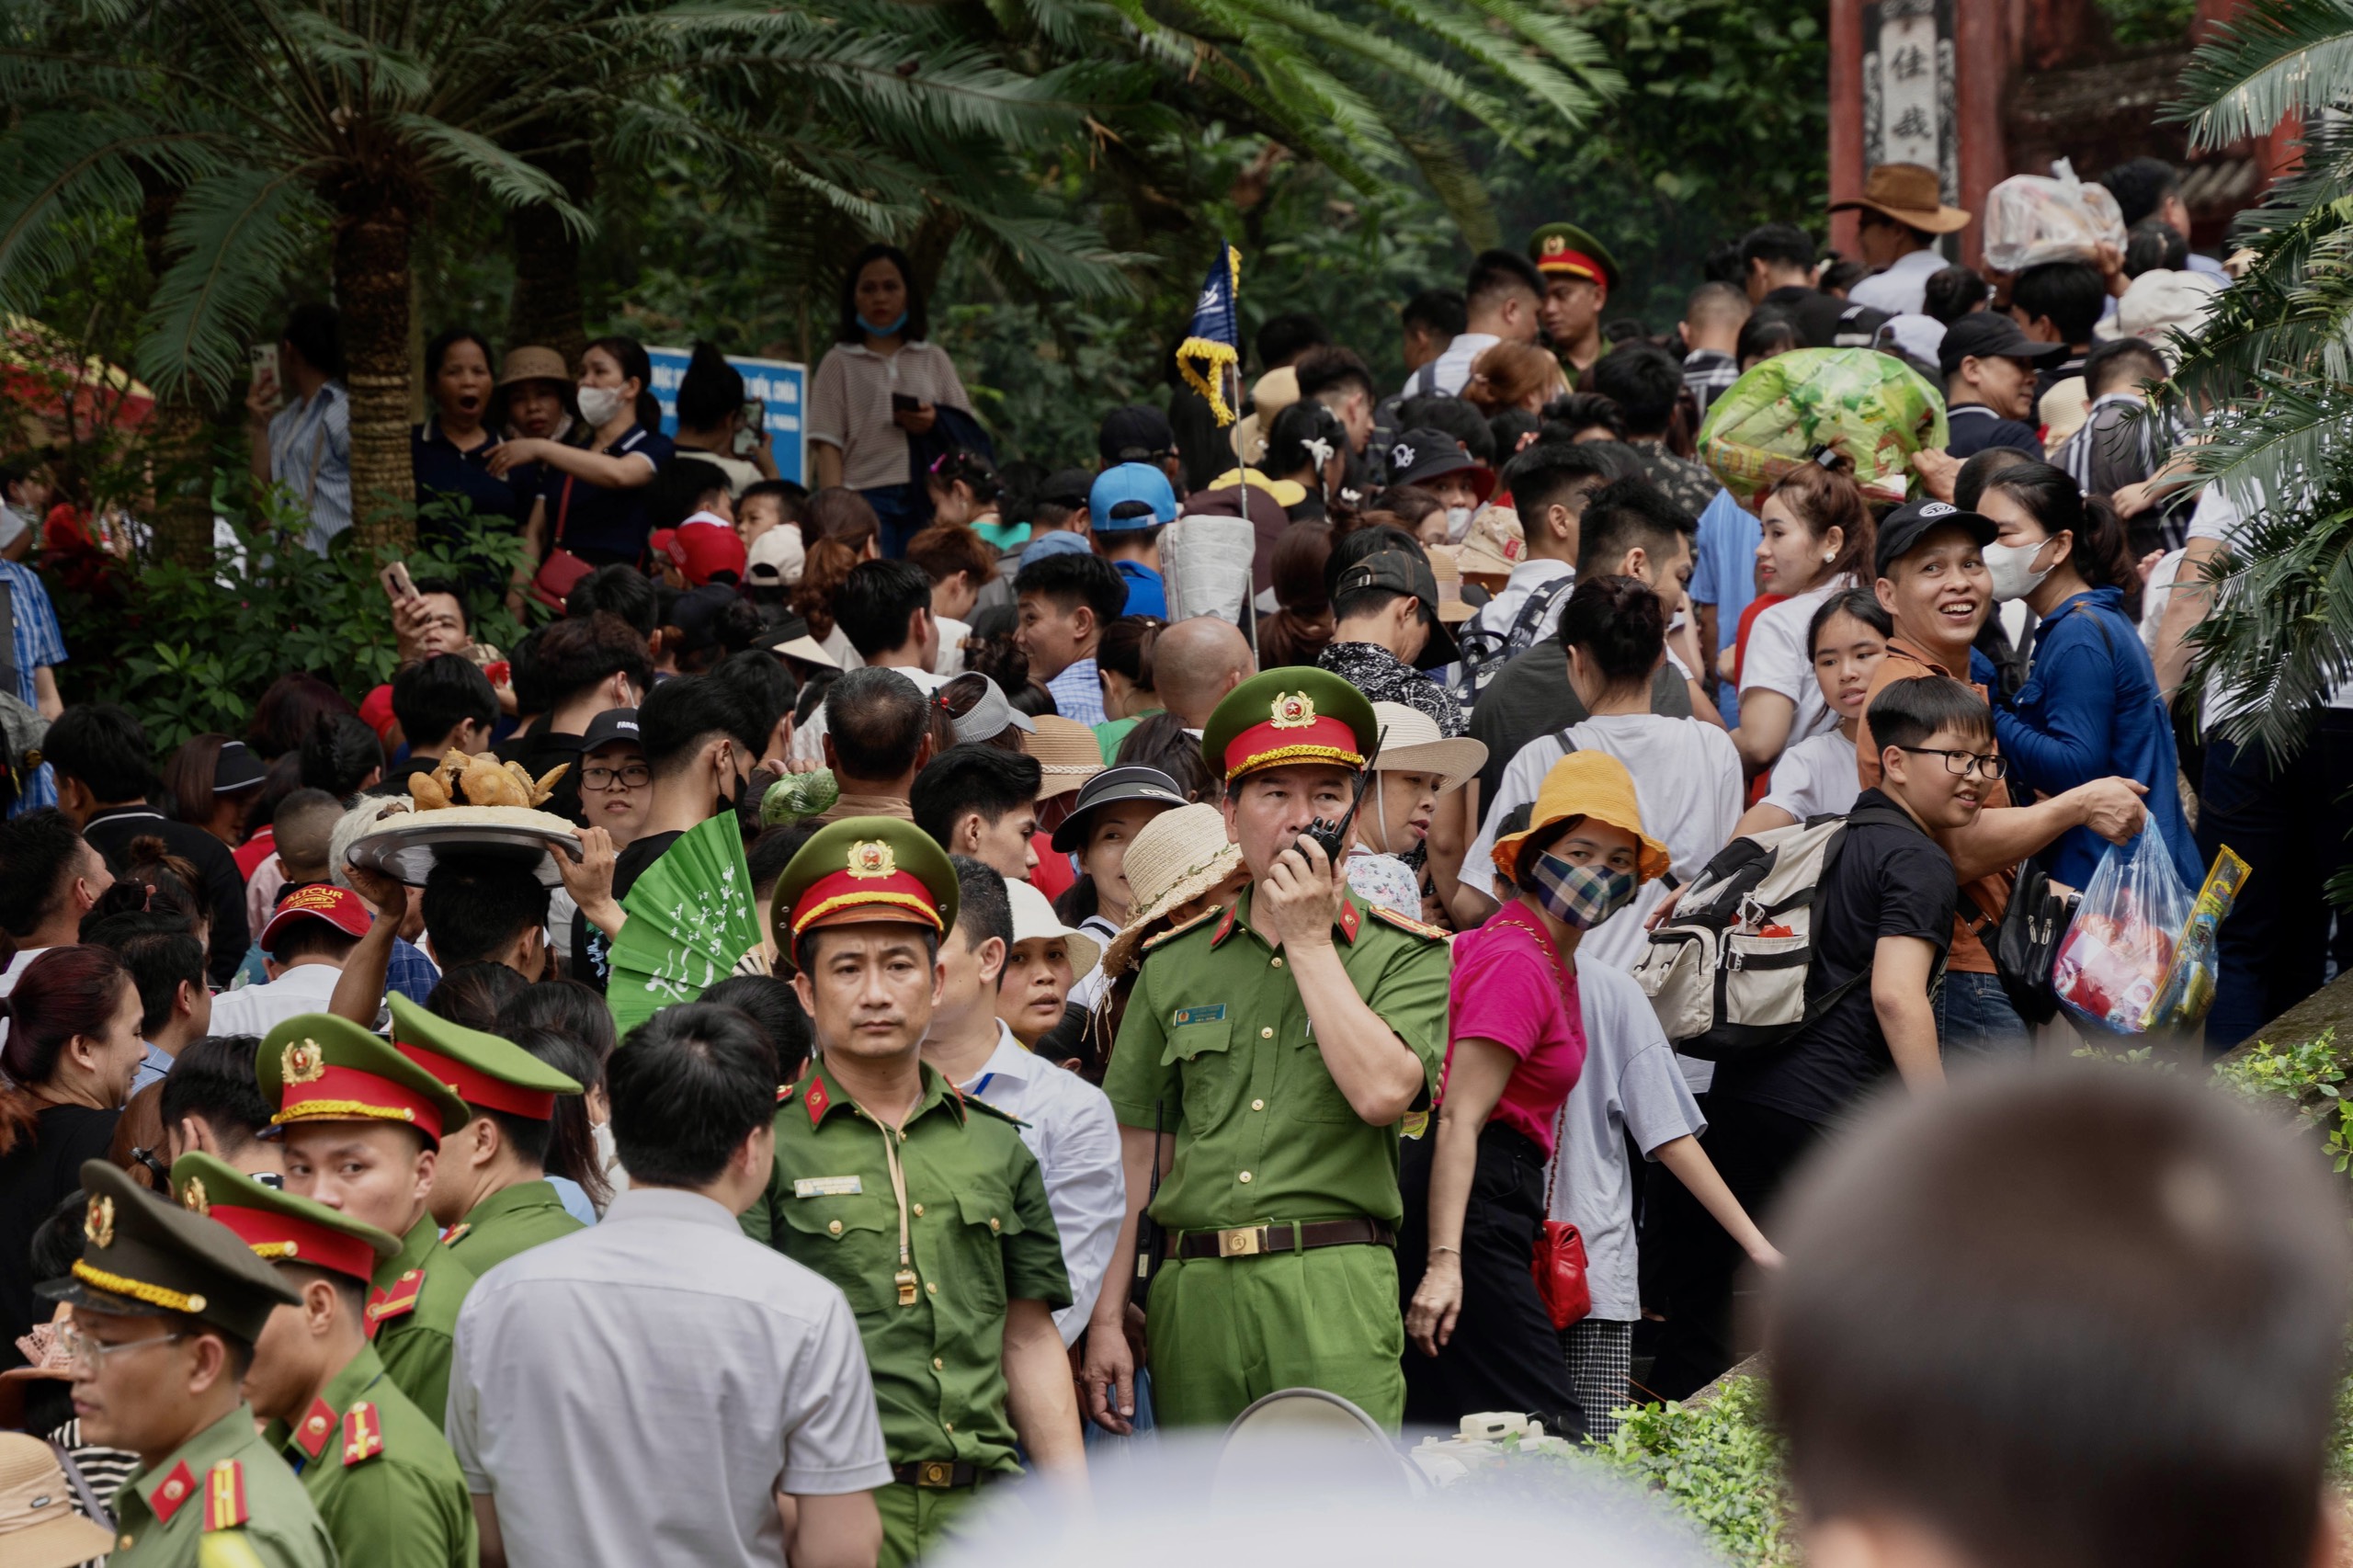 Chưa chính lễ, Phú Thọ đã đón gần 1,5 triệu lượt khách về trẩy hội Đền Hùng - Ảnh 2.